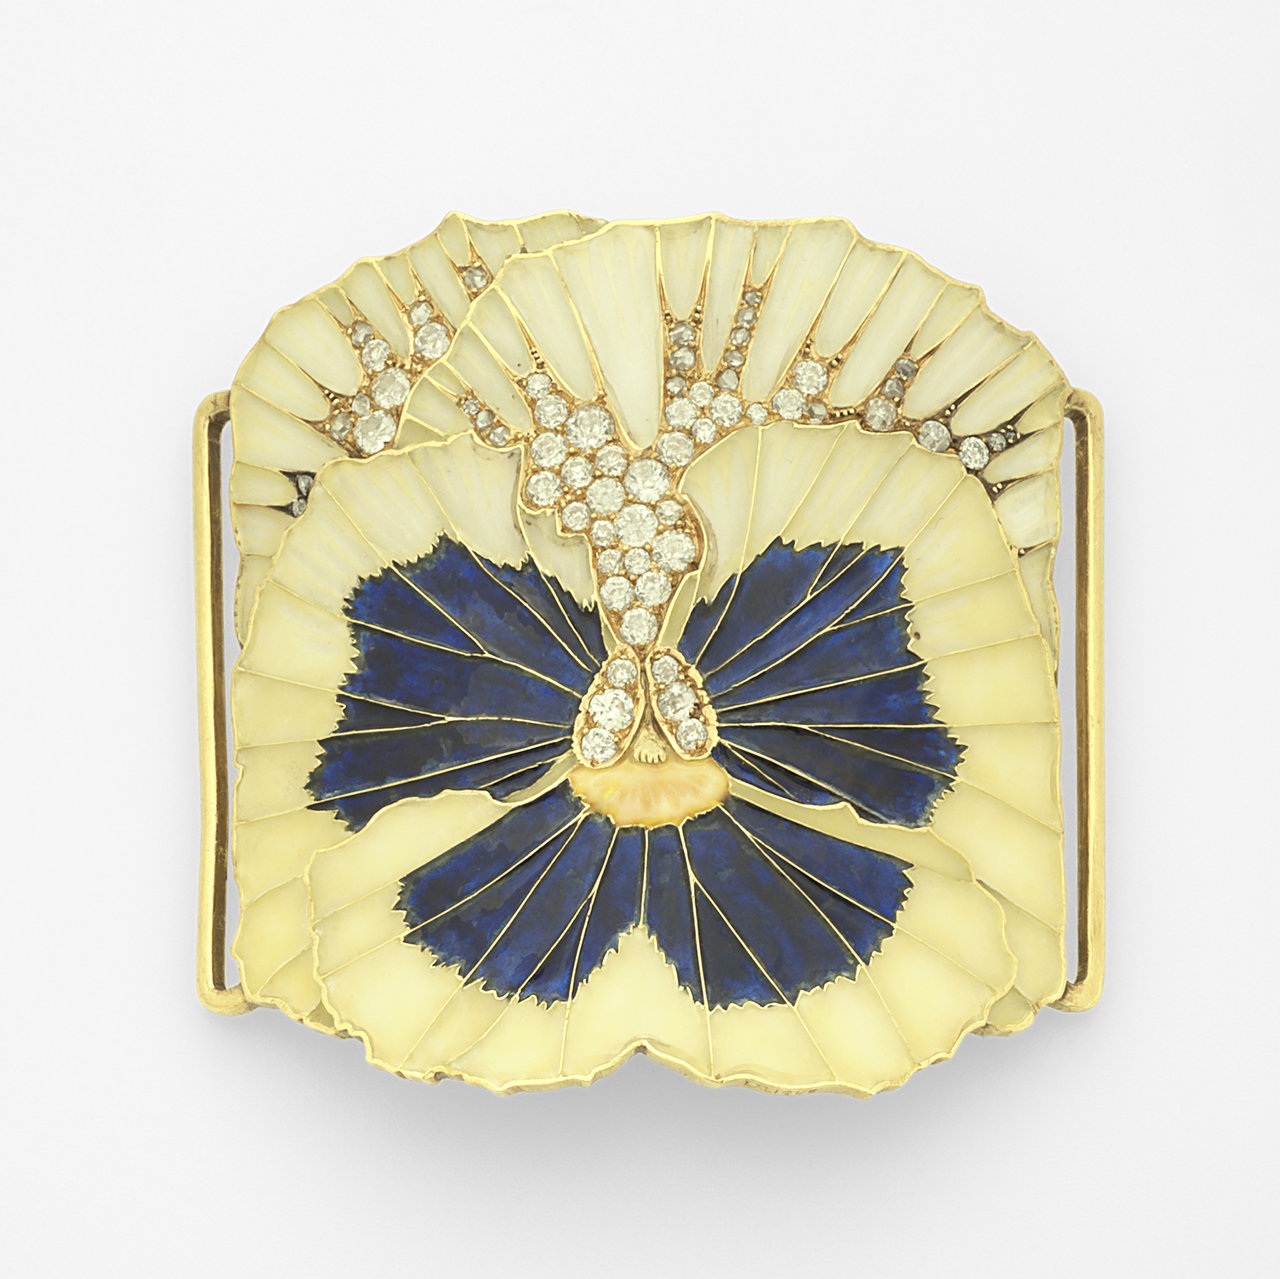 Broche uit Museum Lalique